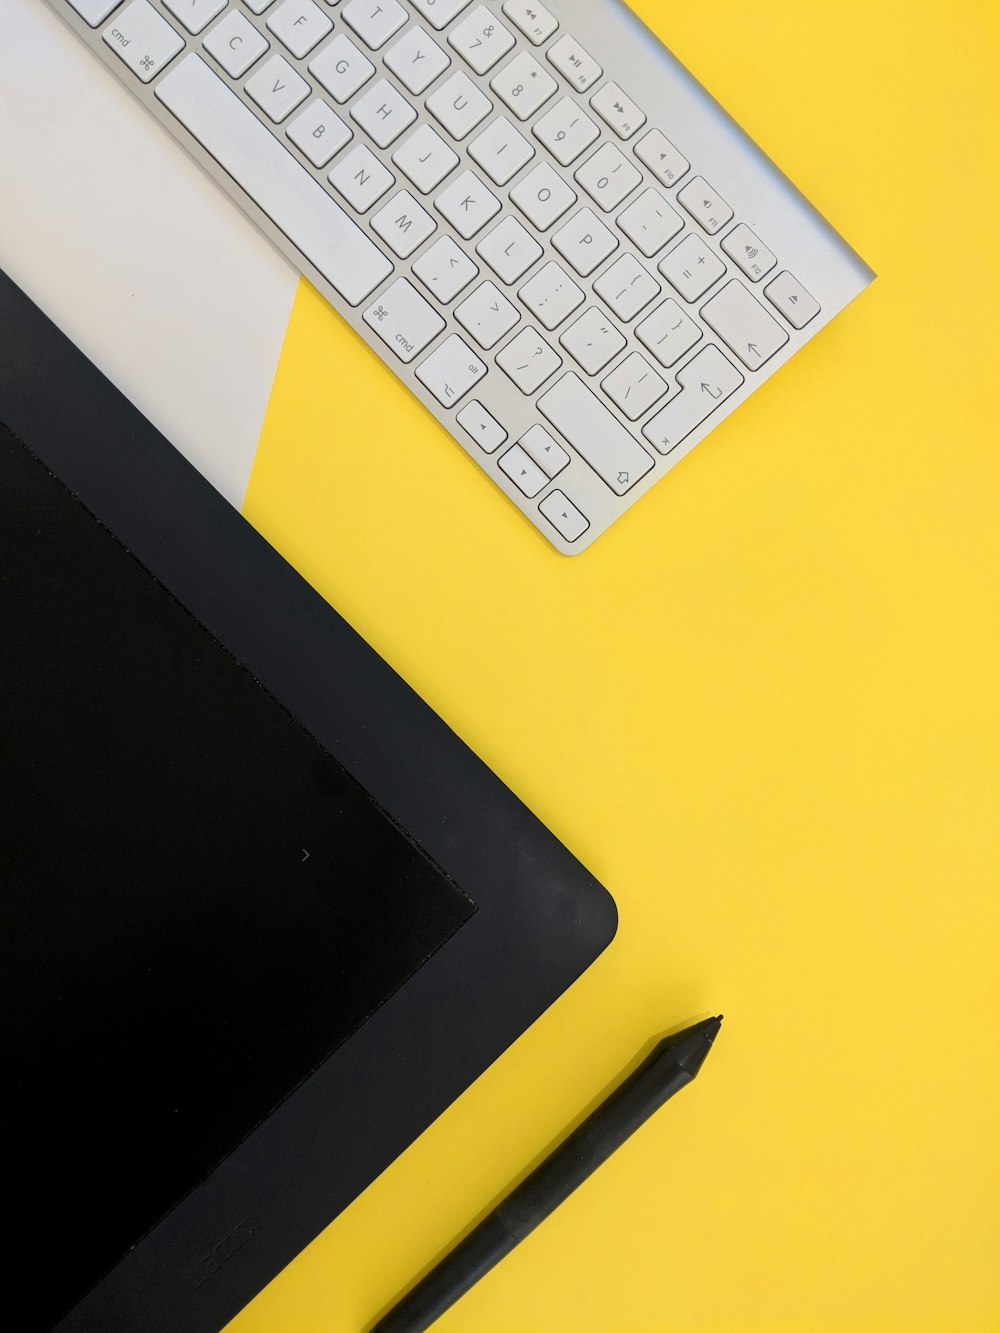 clavier sans fil Apple gris à côté d’une tablette noire et d’un stylet